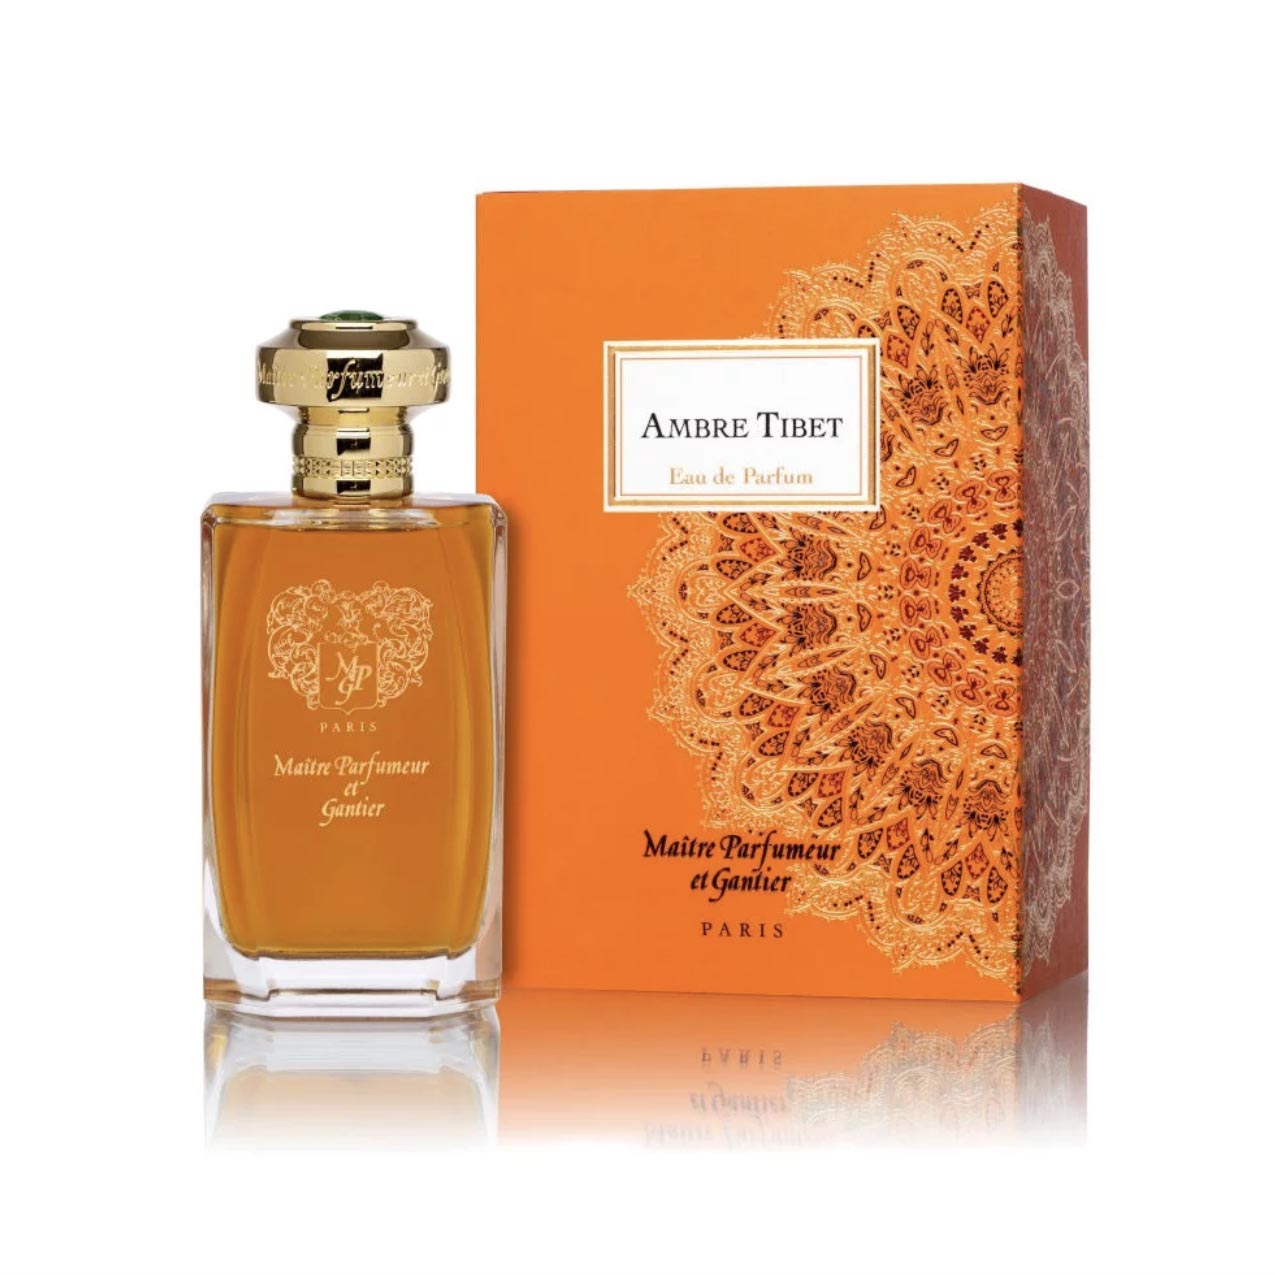 Ambre Tibet Eau de Parfum Bottle and Box by Maître Parfumeur et Gantier